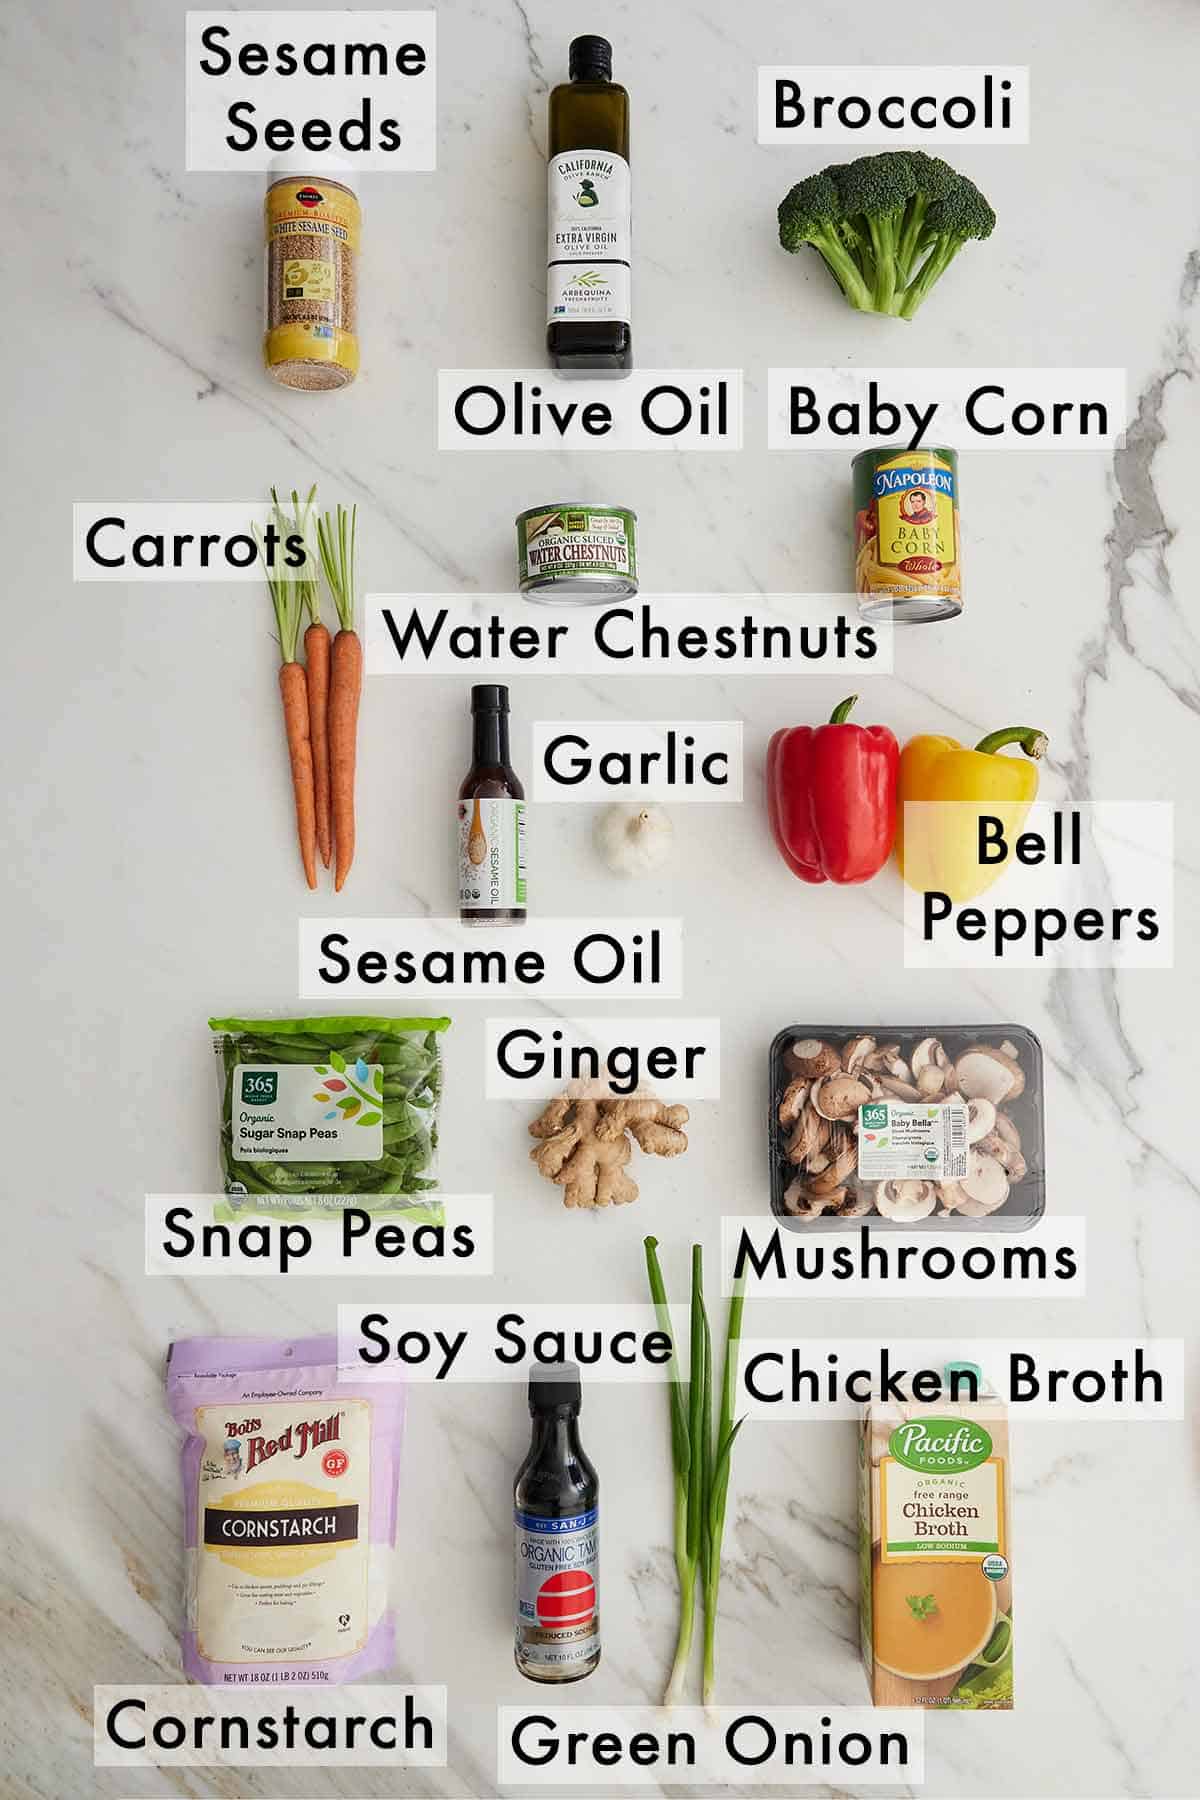 Ingredients needed to make vegetable stir fry.